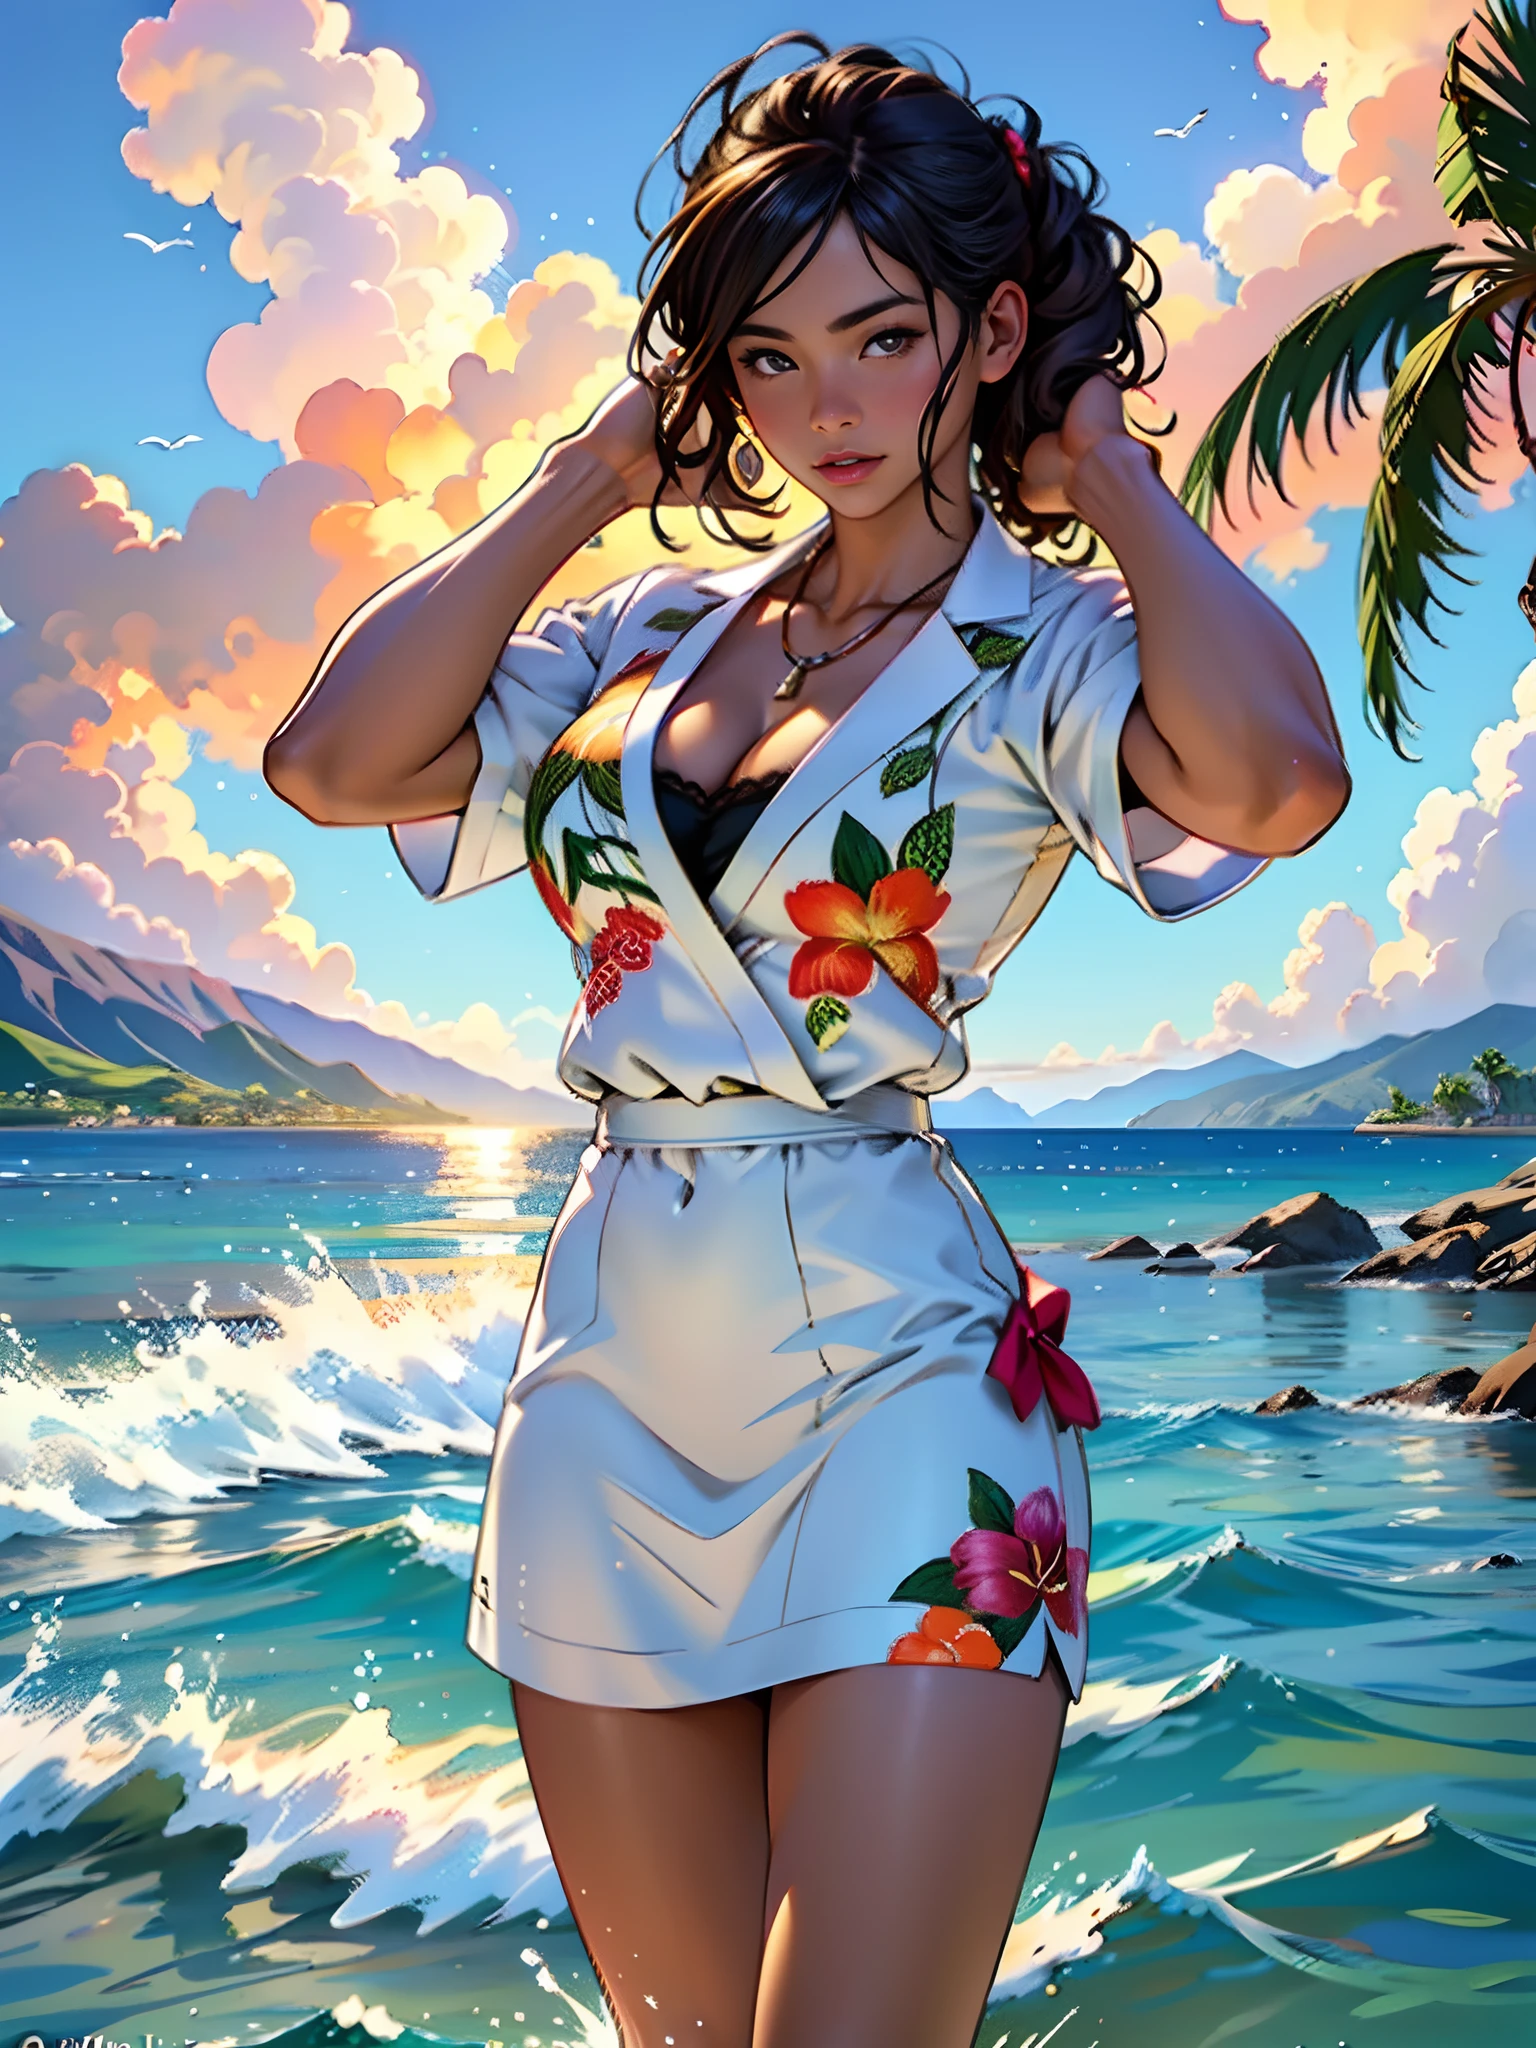 Hawaii Lahaina queimando fogo nas costas, 1 garota pintando da vista da água, style by Jaime Frias, melhor qualidade, realista, ilustração premiada em cores, (Detalhe complicado: 1.2), (detalhe fino)